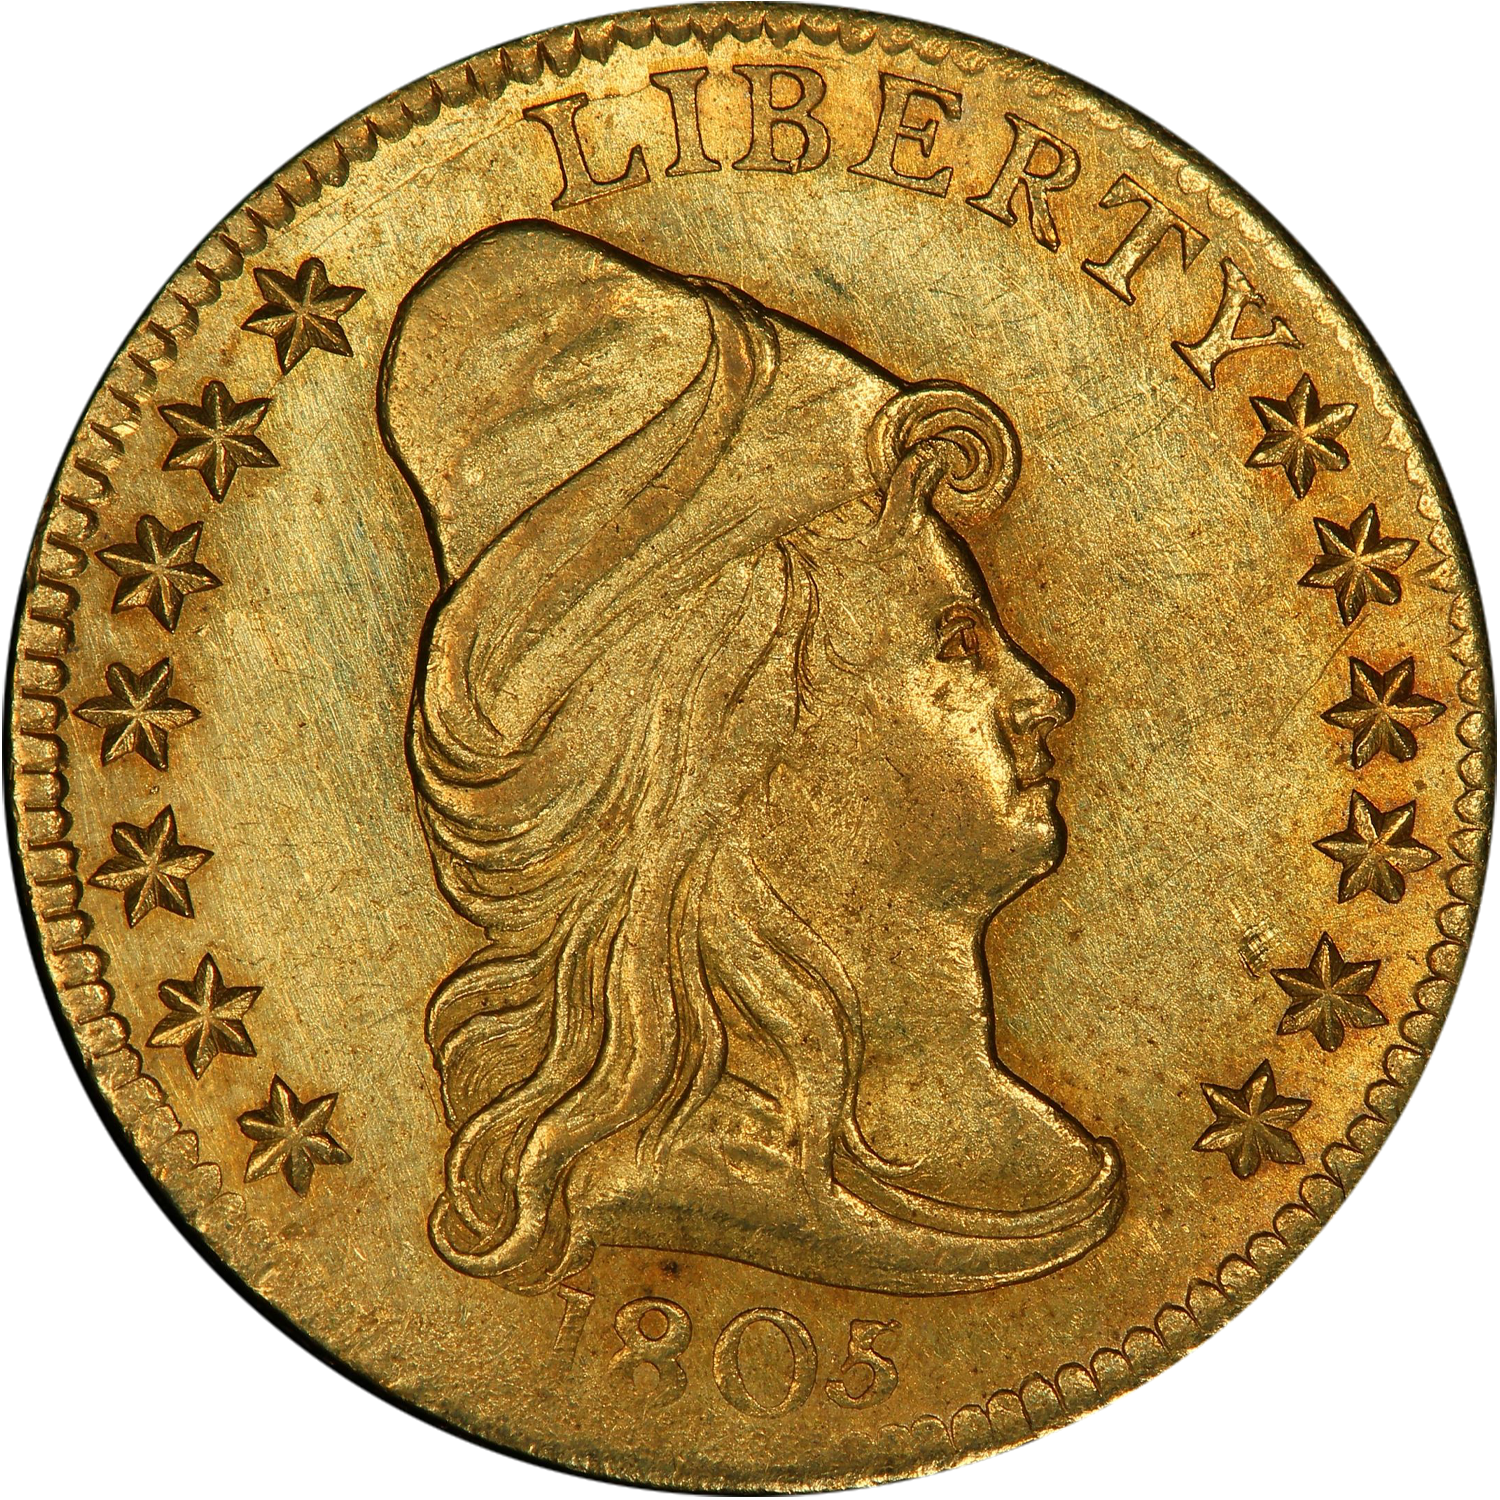 1805 quarter eagle gold value